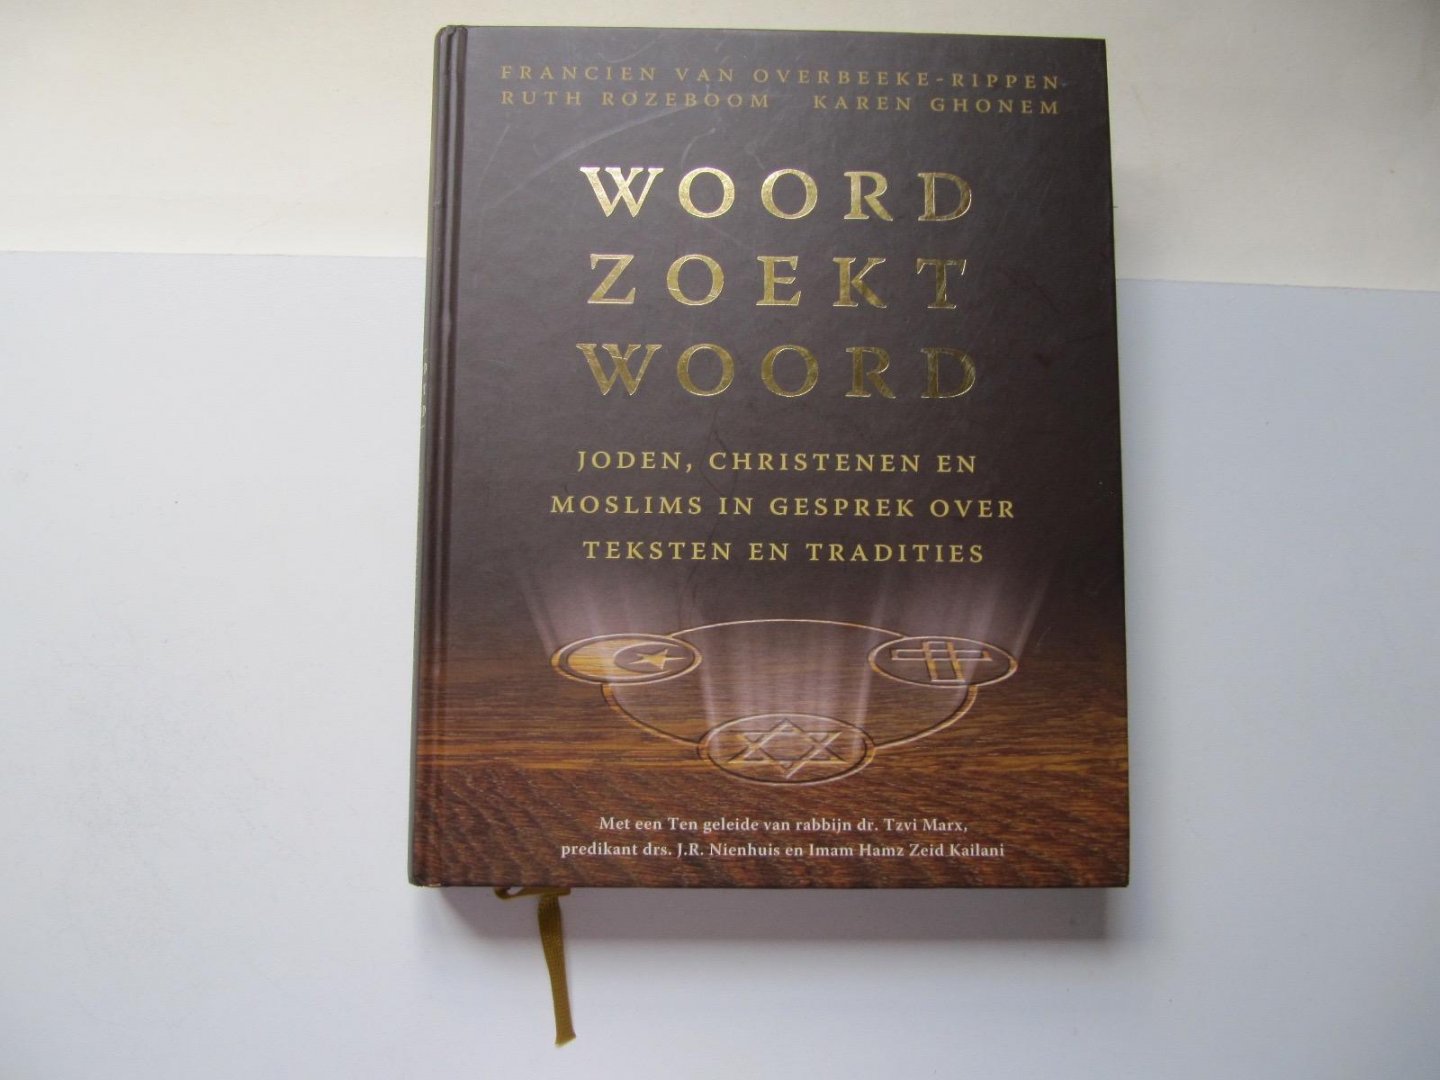 Francien van Overbeeke-Rippen - Ruth Rozeboom - Karen Ghonem - Woord zoekt Woord / joden, christenen en moslims in gesprek over tekst en traditie